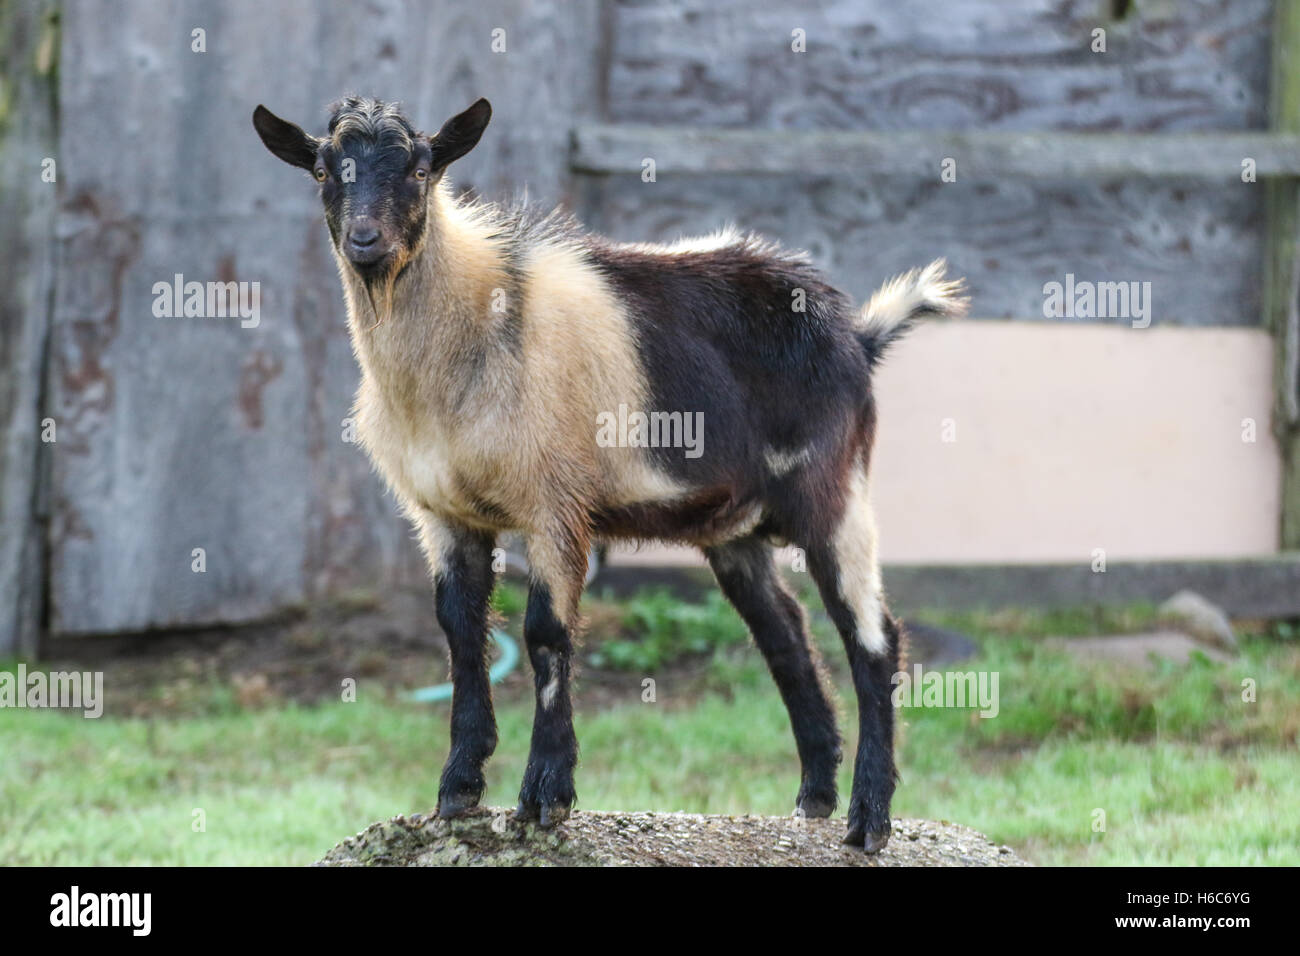 Billy goat standing around Stock Photo